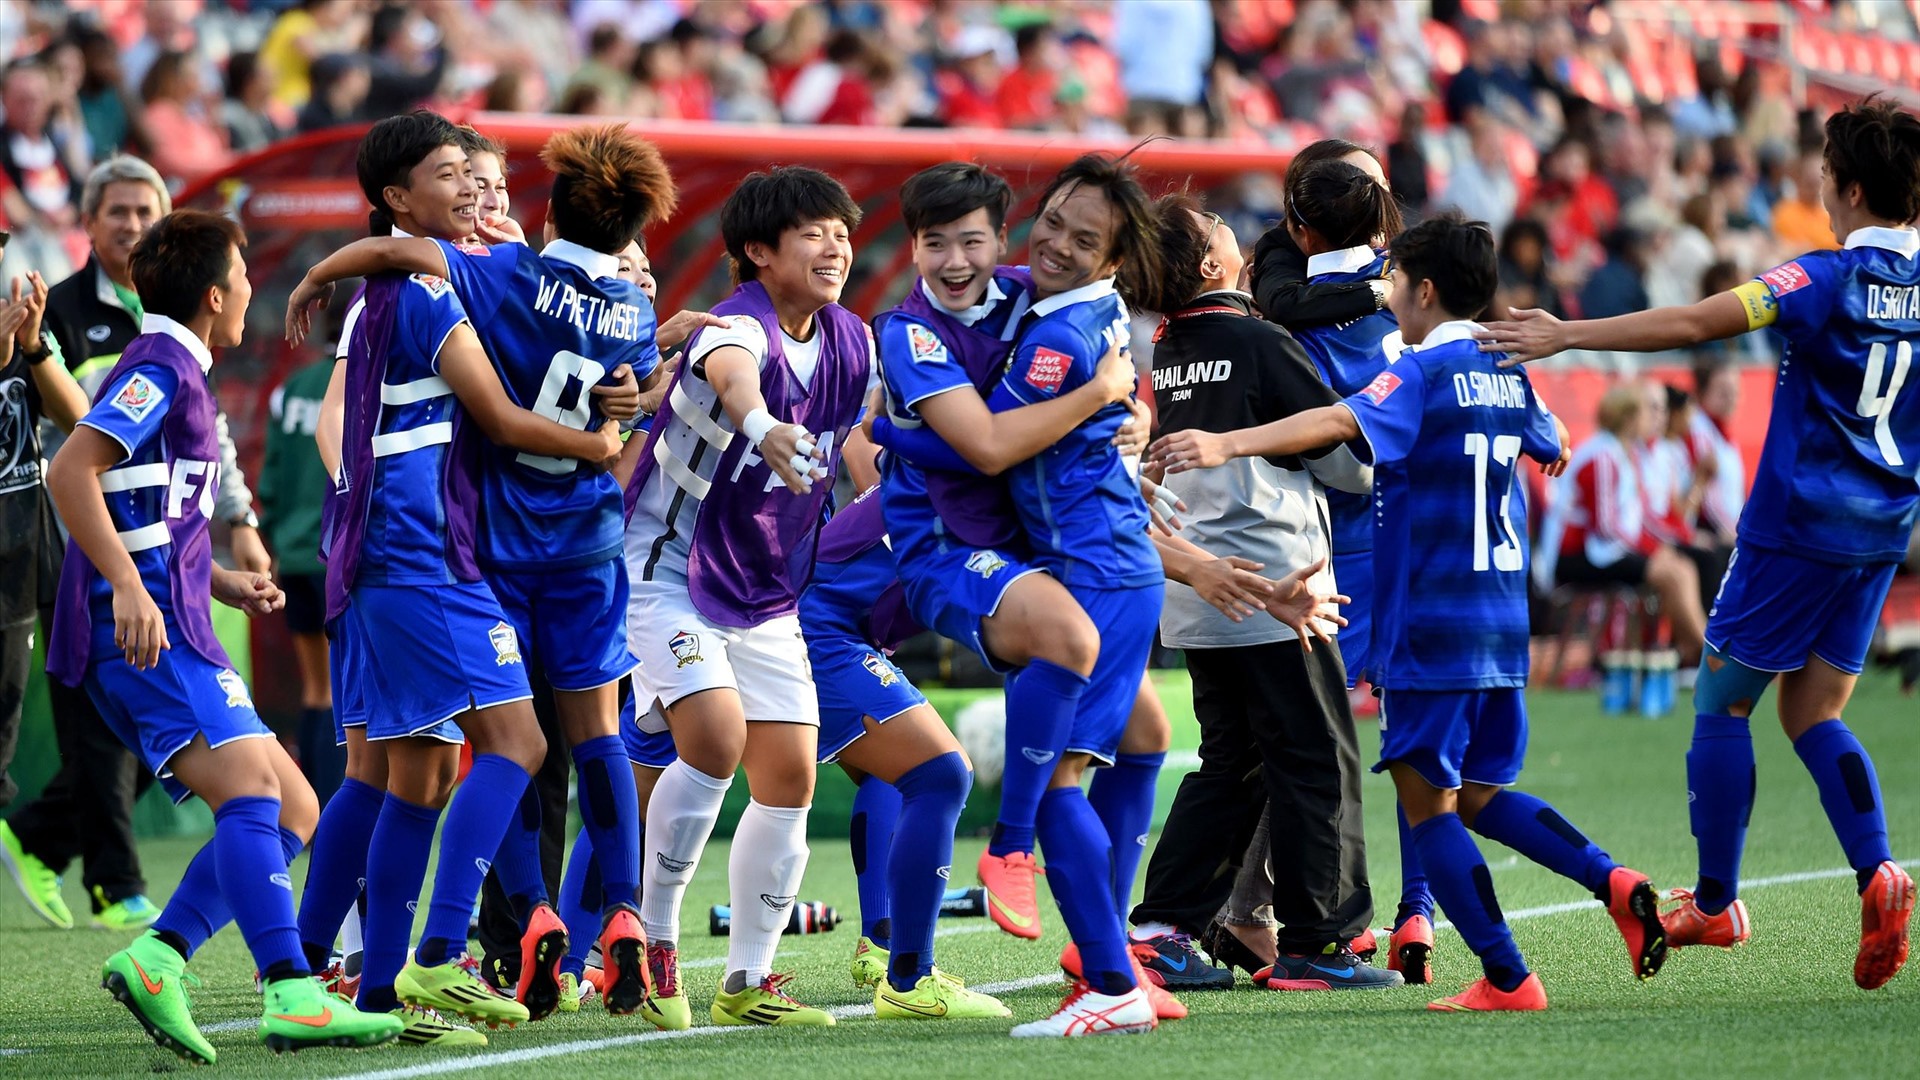 Tuyển nữ Thái Lan lần đầu dự World Cup năm 2015 và có 1 trận thắng. Ảnh: Eurosport